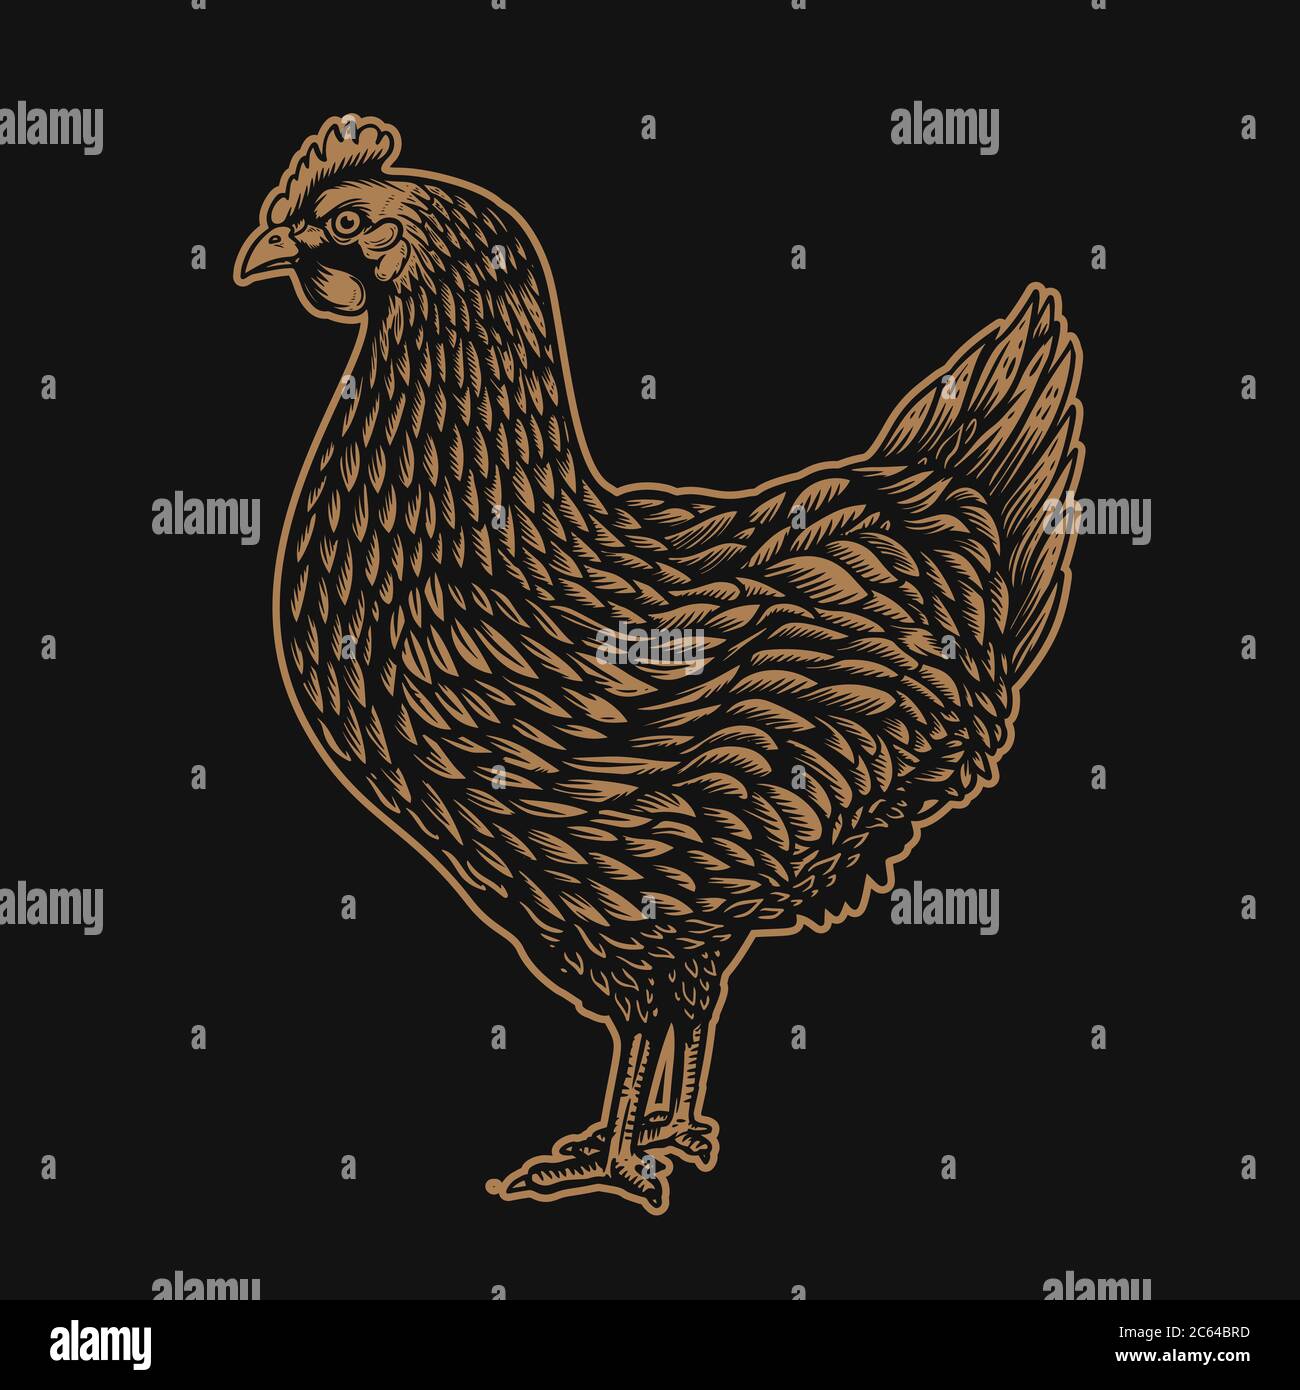 Illustrazione del pollo in stile di incisione. Elemento di design per logo, etichetta, segno, emblema, poster. Illustrazione vettoriale Illustrazione Vettoriale